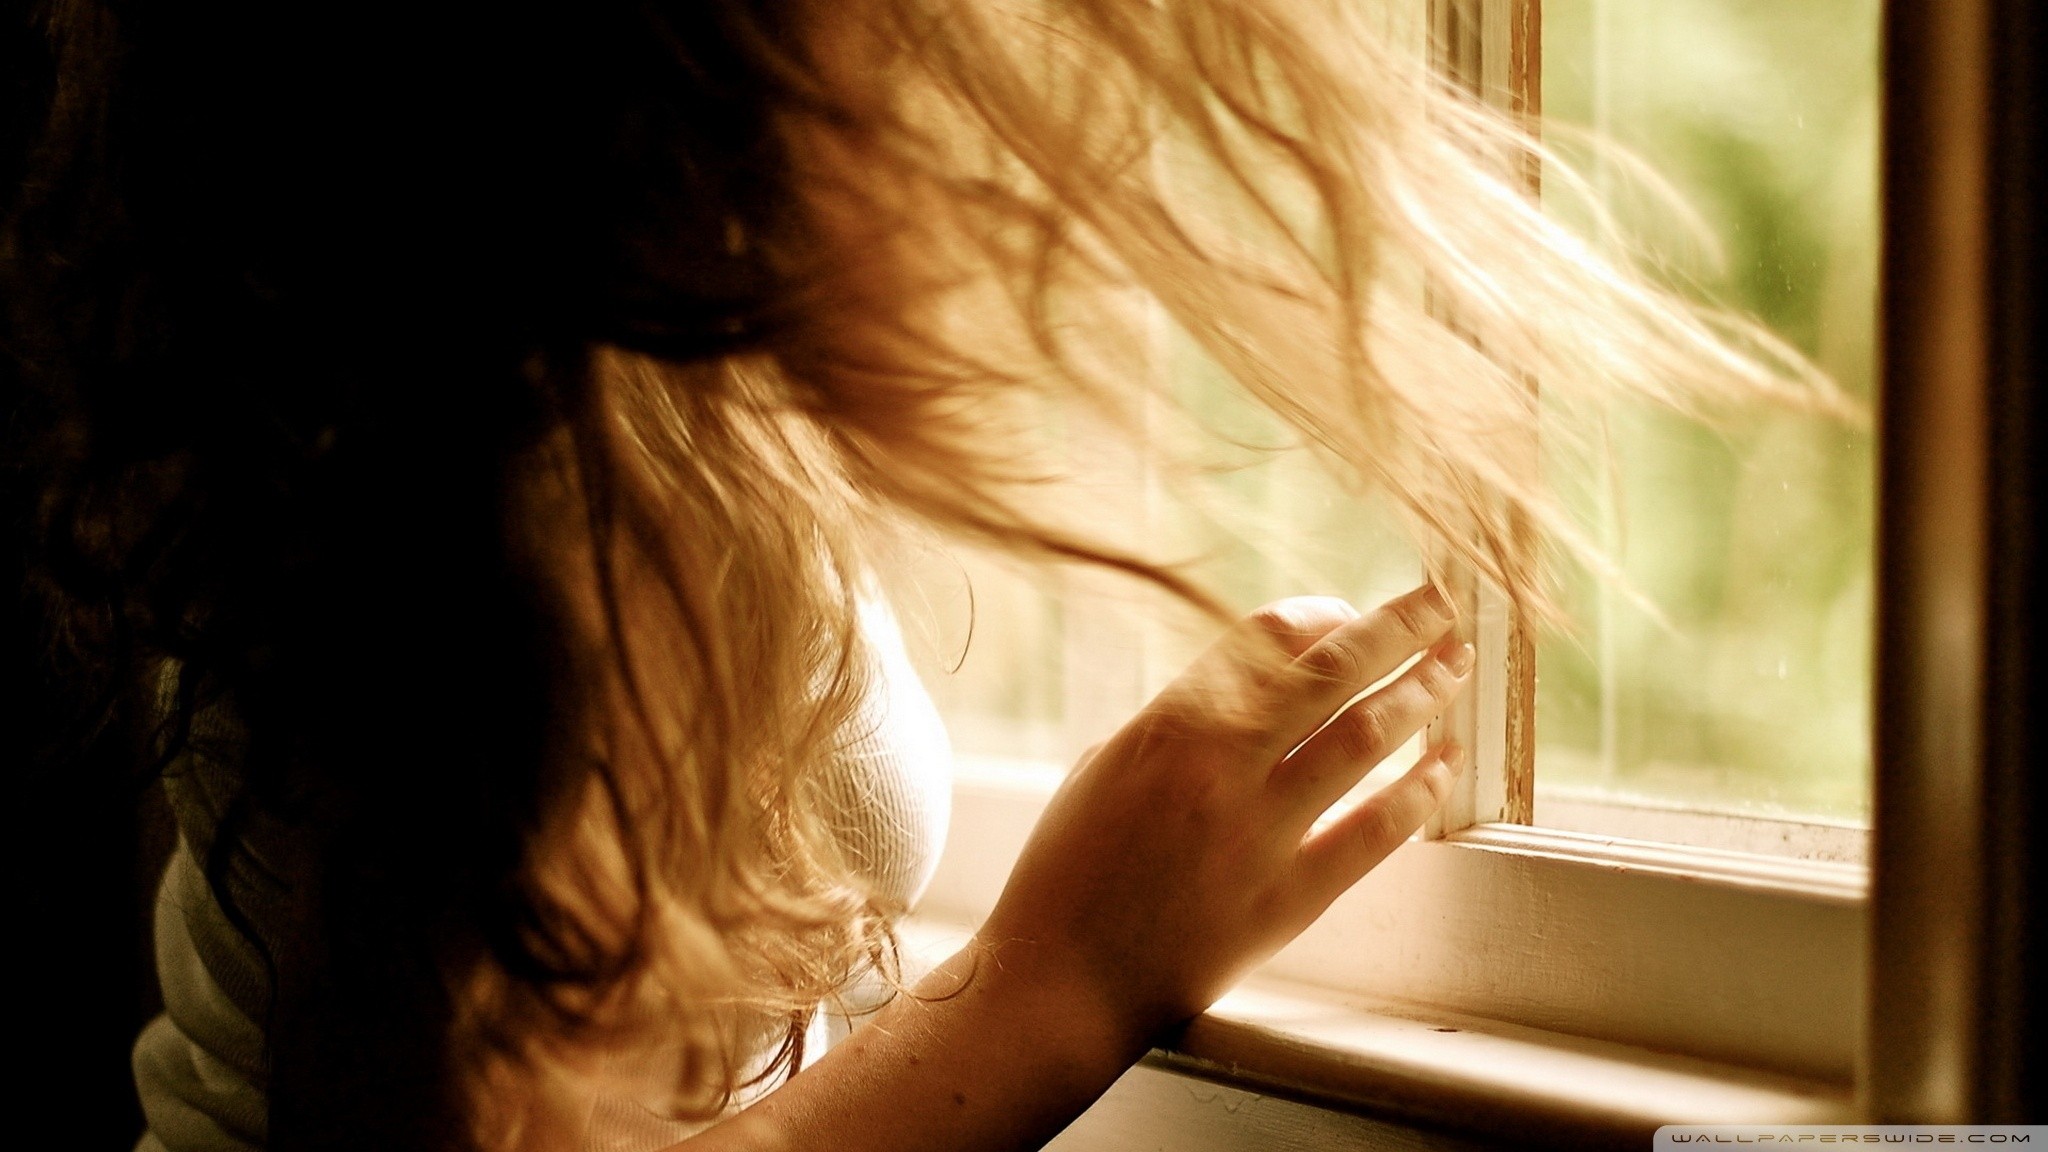 People 2048x1152 window women hair   model sunlight hands women indoors indoors long hair